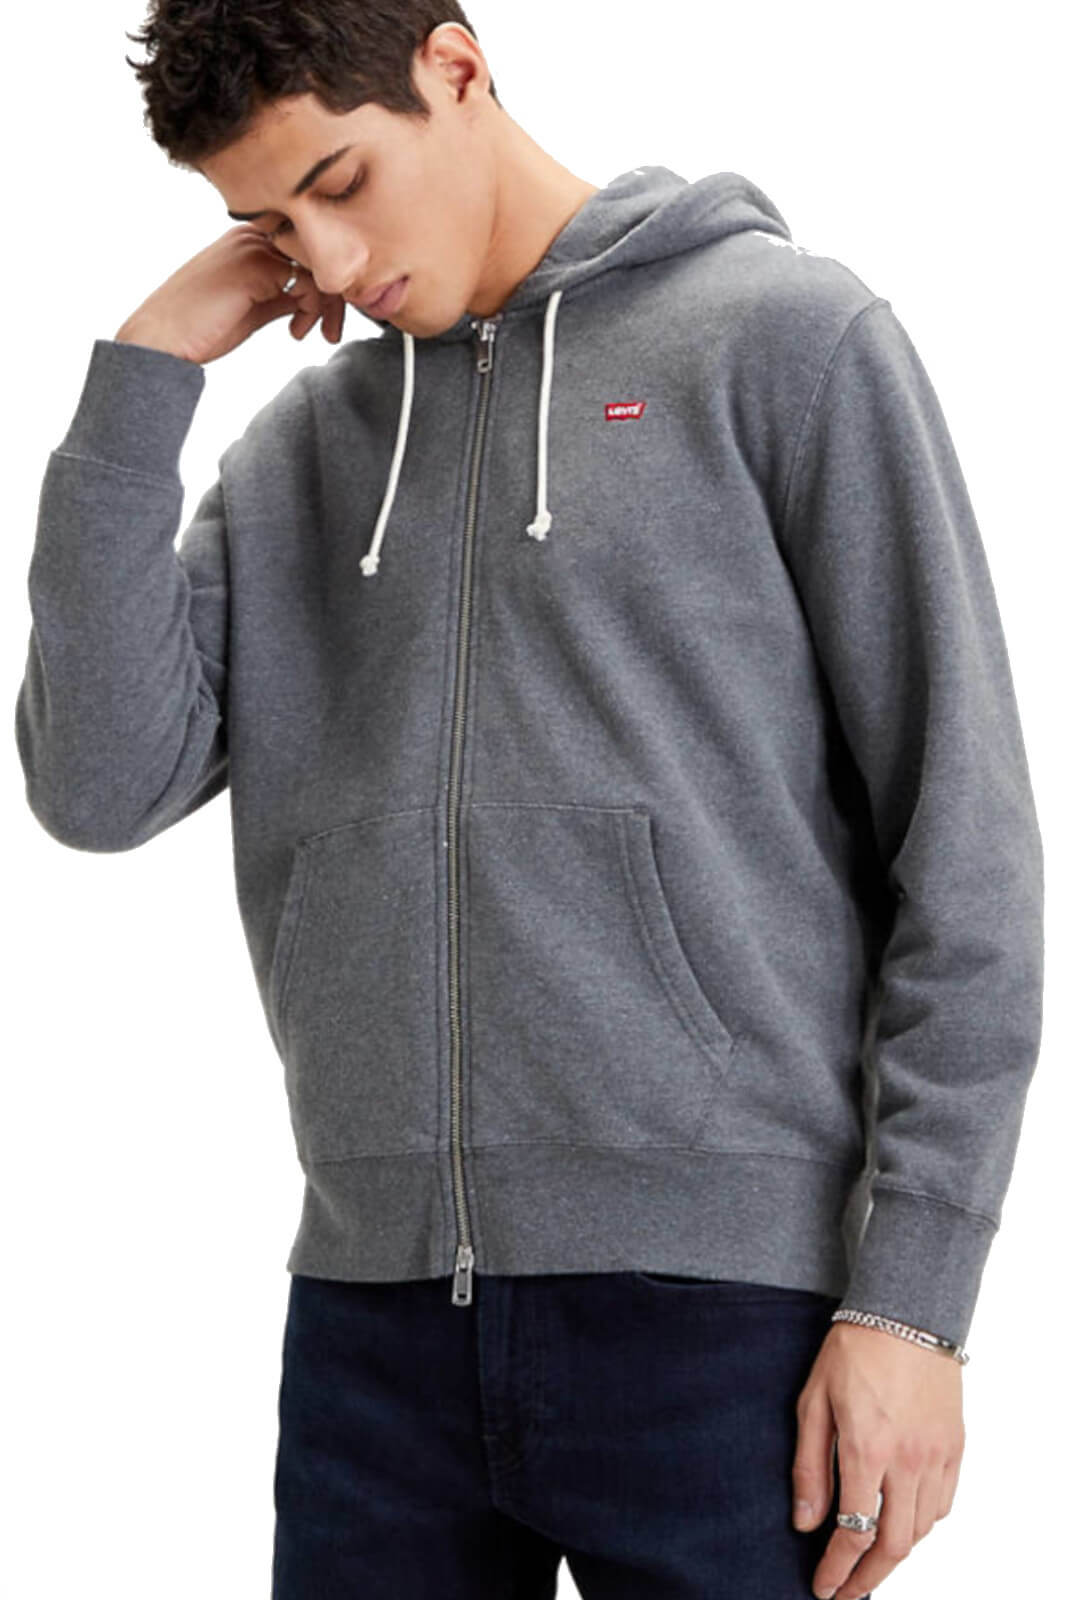 Levi's NEW ORIGINAL ZIP UP men's sweatshirt with hood